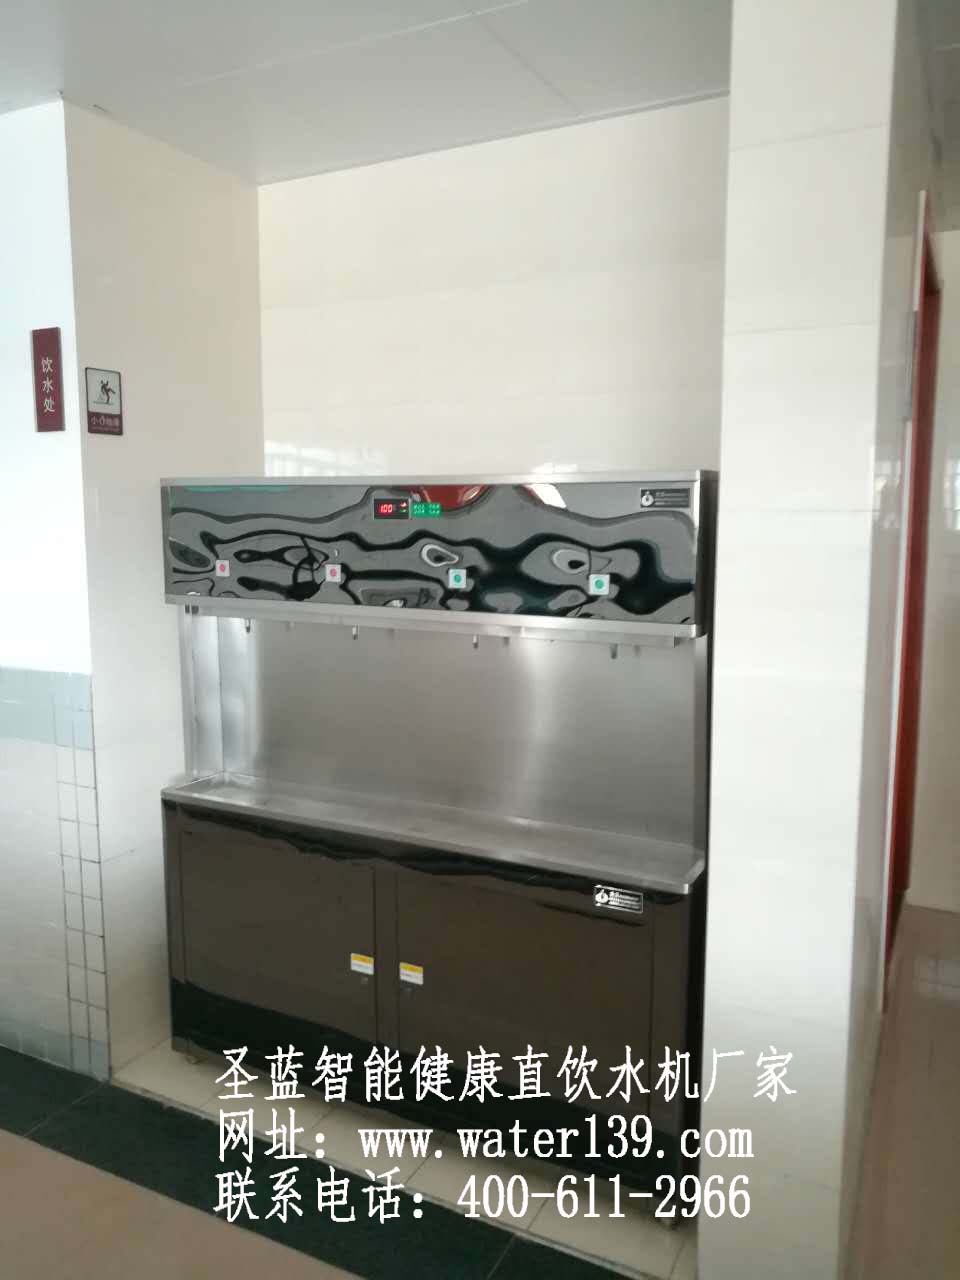 深圳市圣蓝净水设备科技有限公司www.water139.com